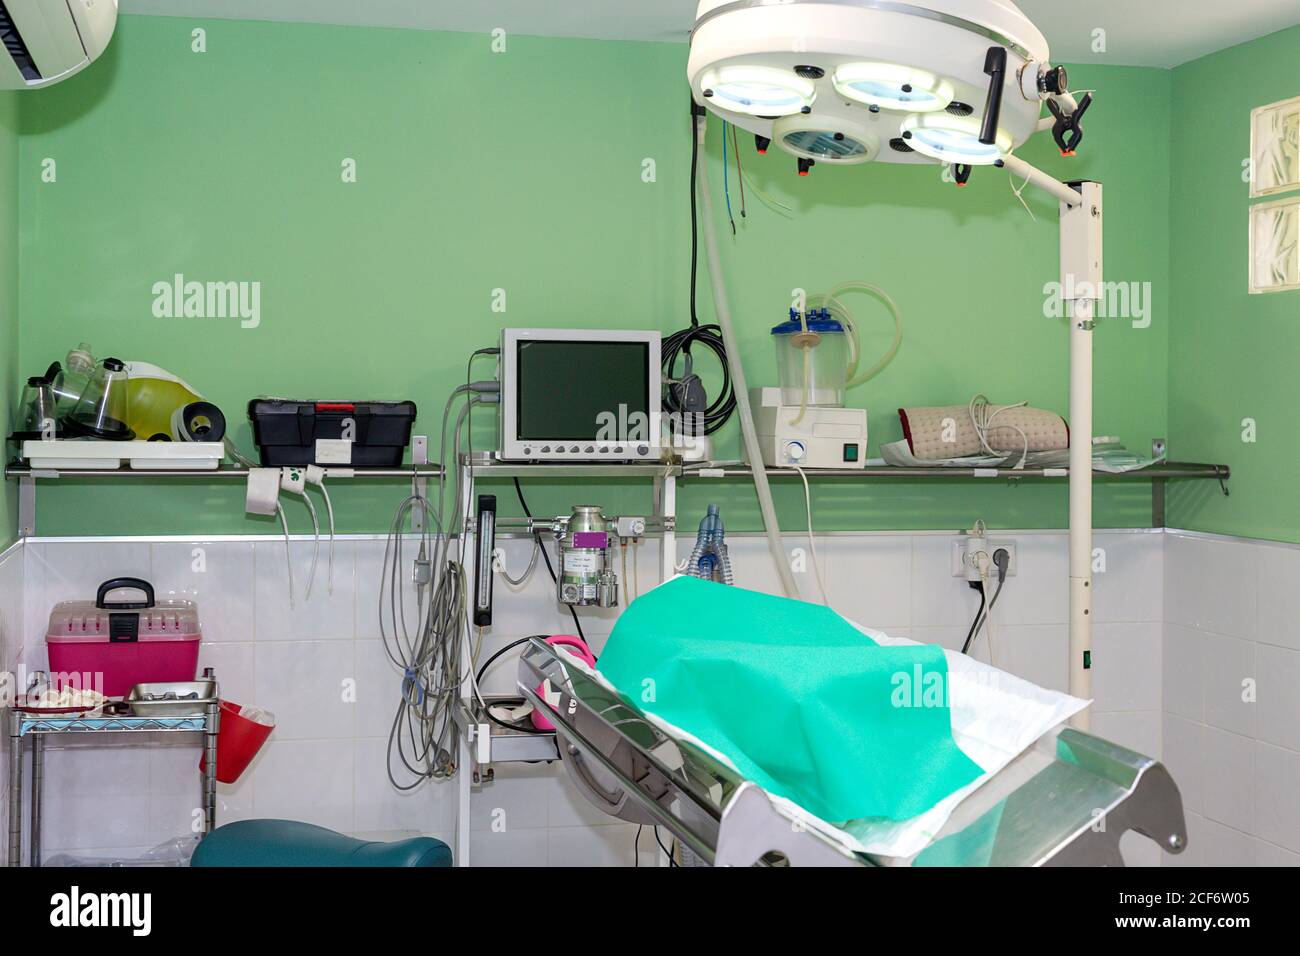 Gesichtsloses Haustier mit grünem Blatt bedeckt, das auf dem Operationstisch liegt In ausgerüsteten Operationssaal der Tierklinik Stockfoto